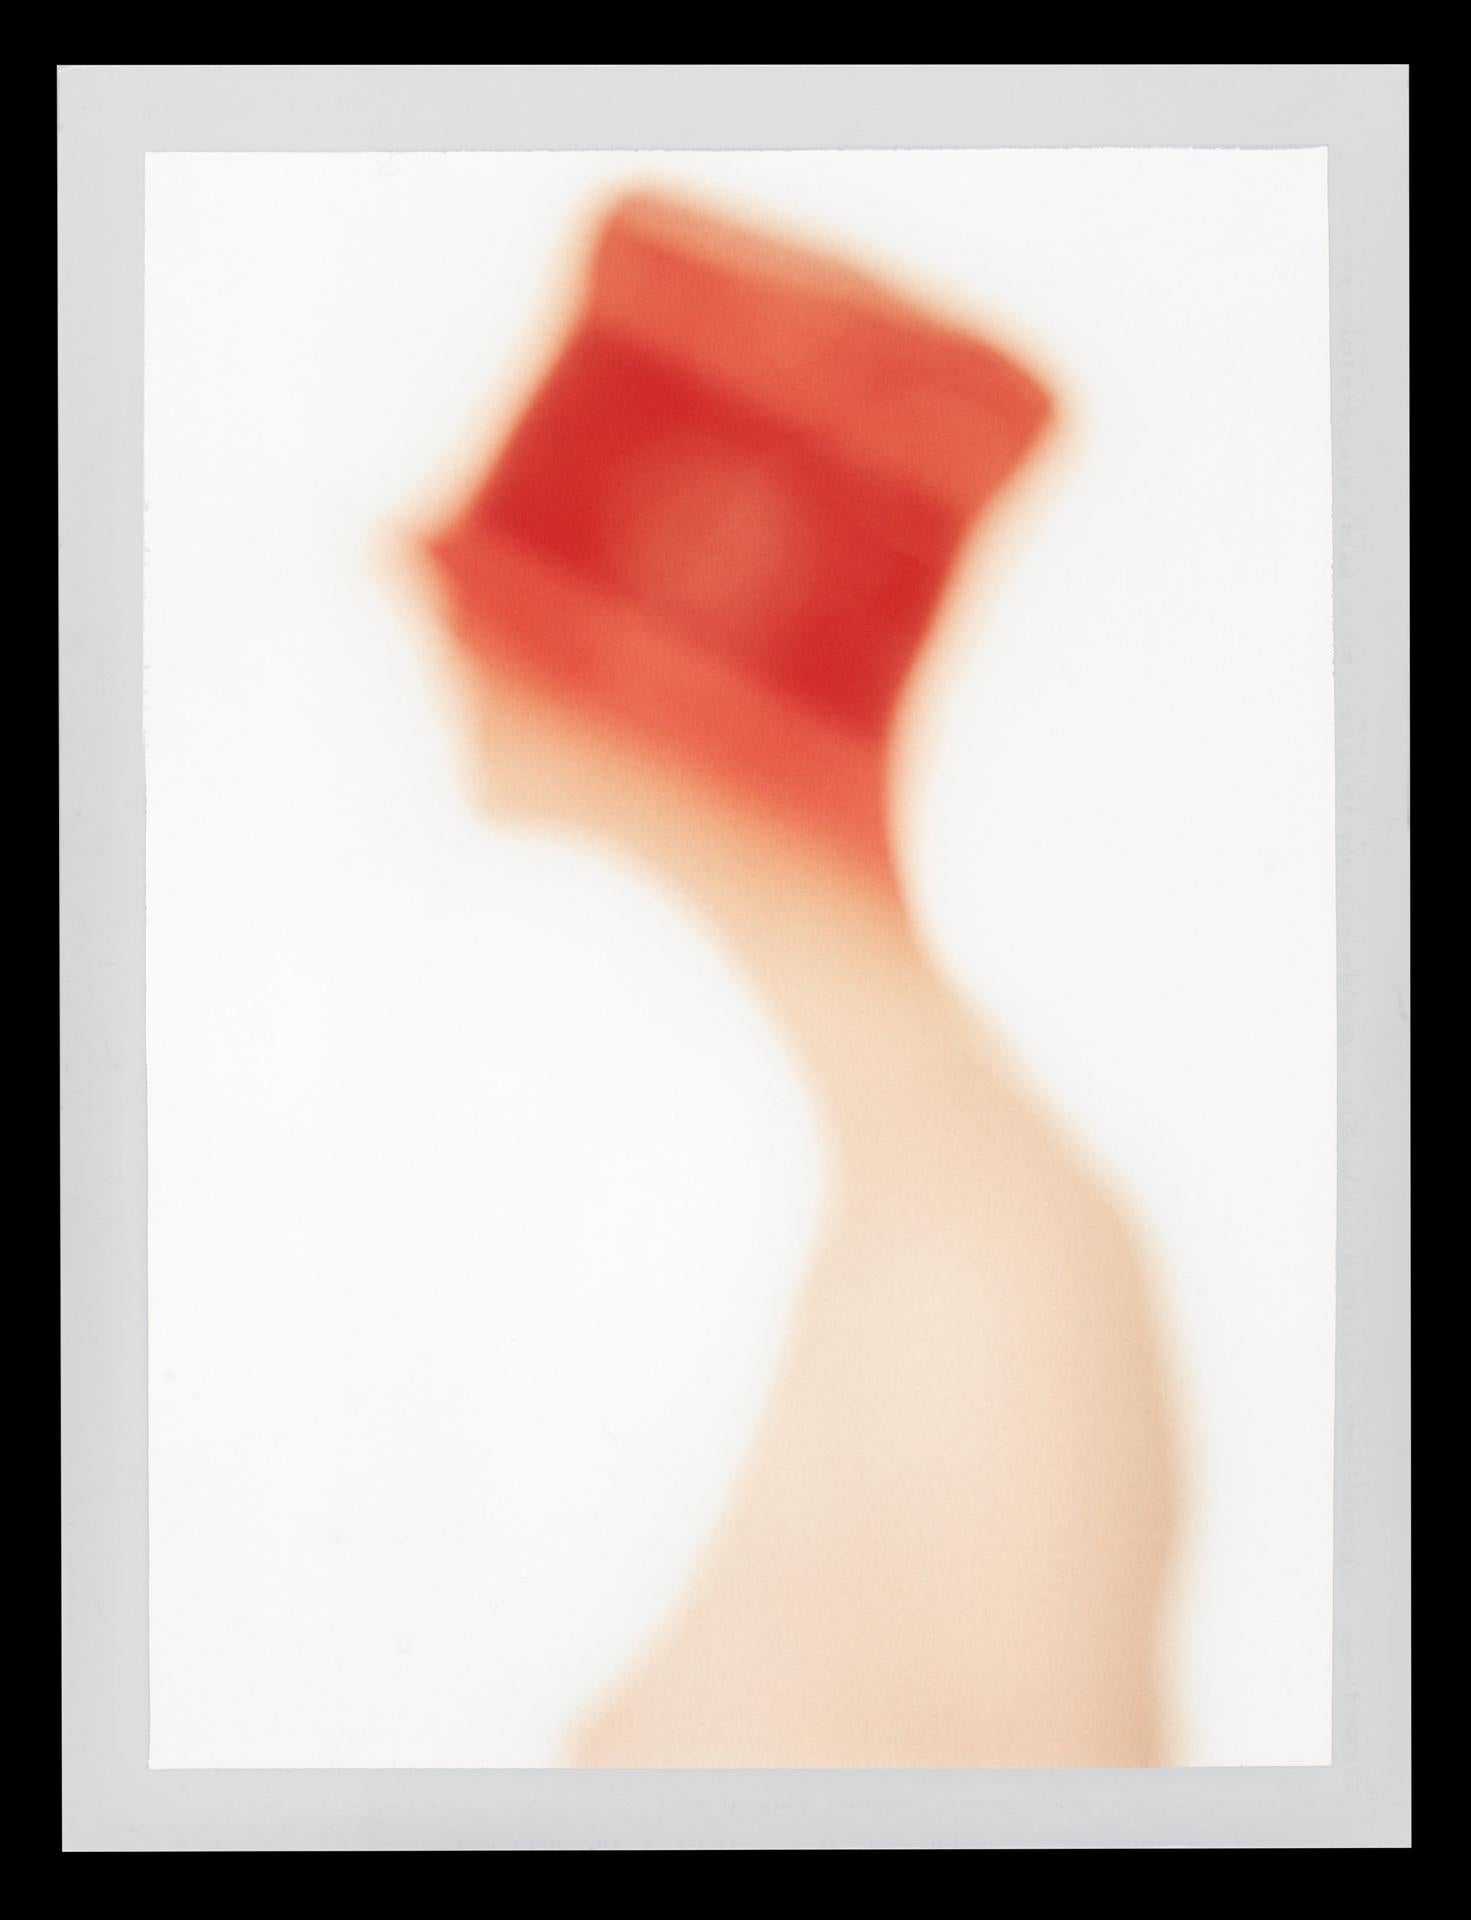 Albert WATSON (*1942, Schottland)
Red Hat, Paris, 1993
Chromogener Druck von einem Polaroid-Positiv, aufgezogen auf Acryl (Diasec)
Blatt 238 x 182,5 cm (93 3/4 x 71 7/8 in.)
Rahmen 239 x 183,5 x 10 cm (94 1/8 x 72 1/4 x 3 7/8 in.)
Gerahmt in der